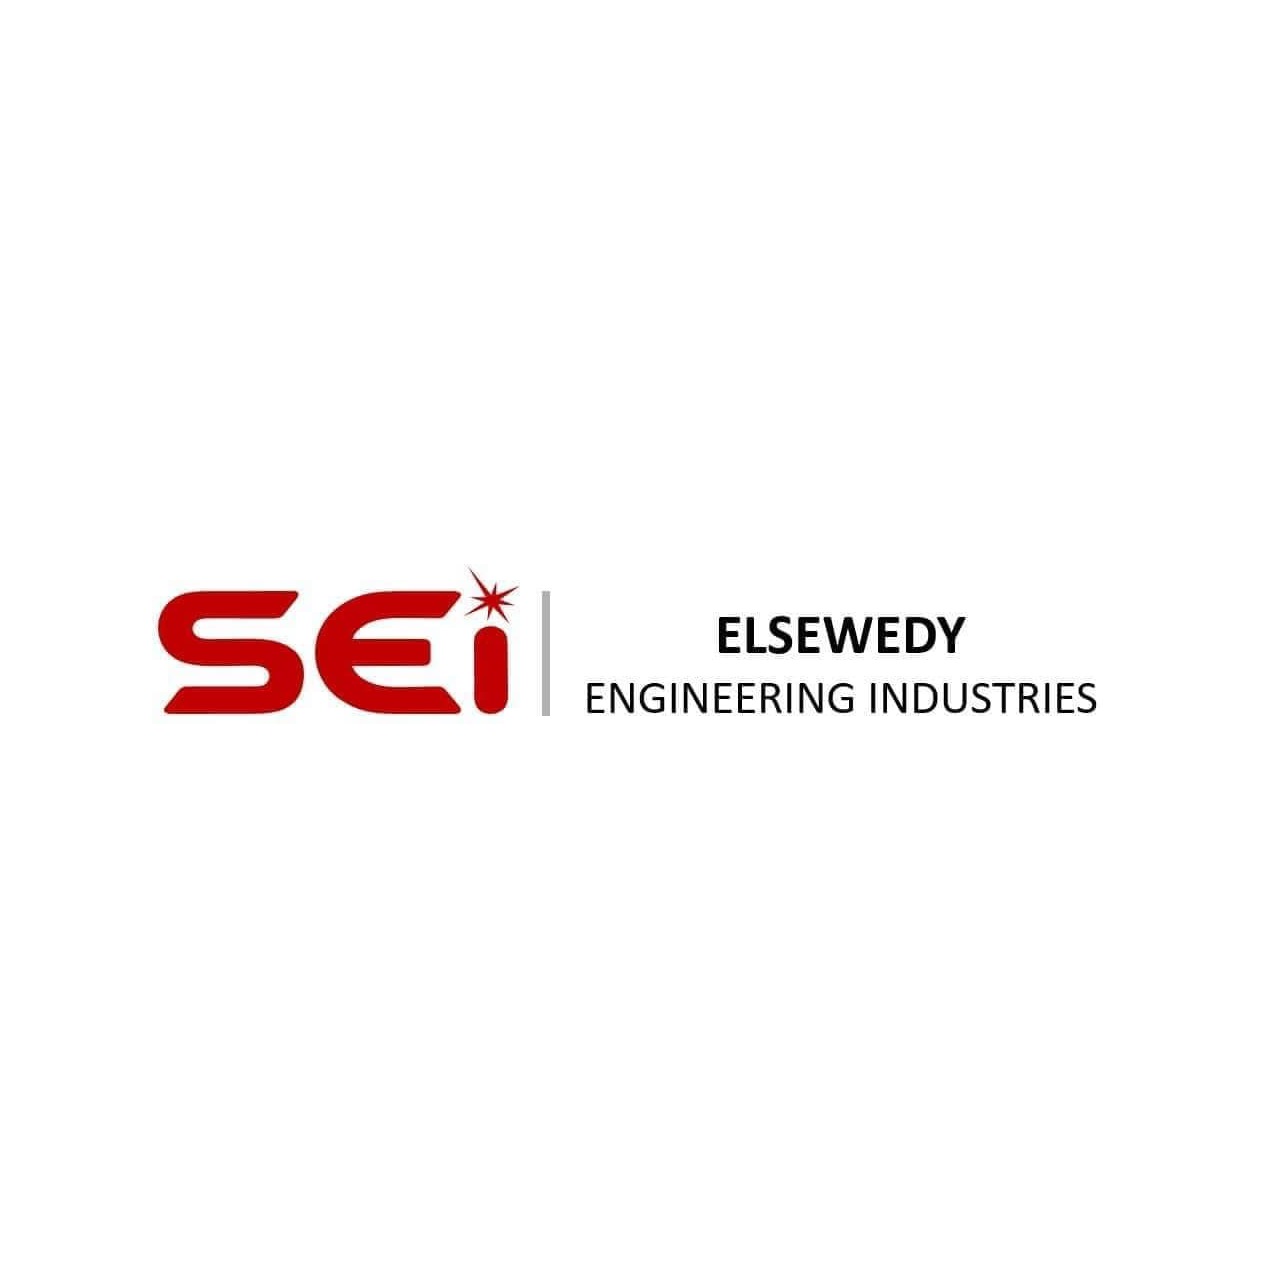 El Sewedy Engineering Industries